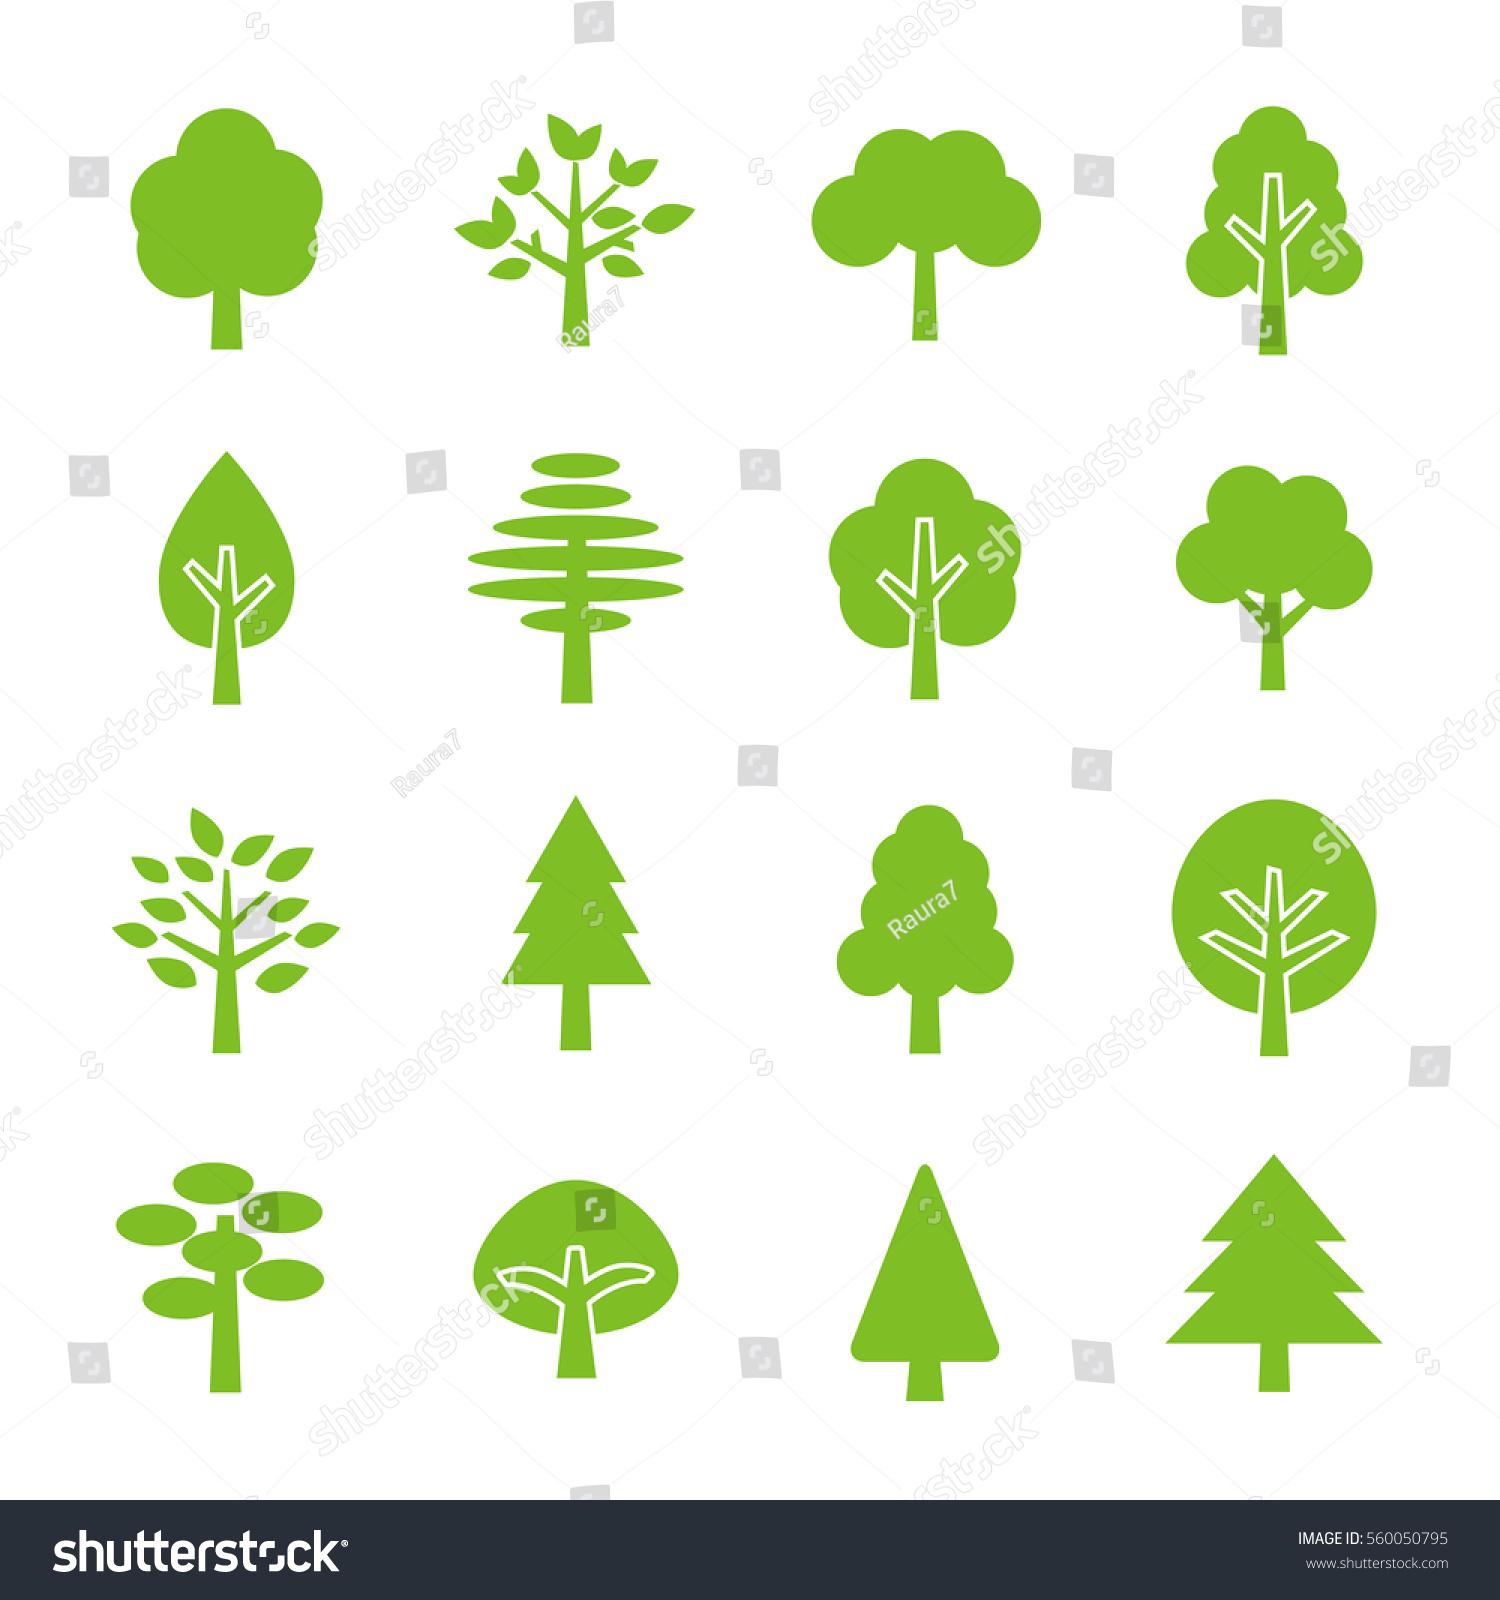 Tree icon set #560050795